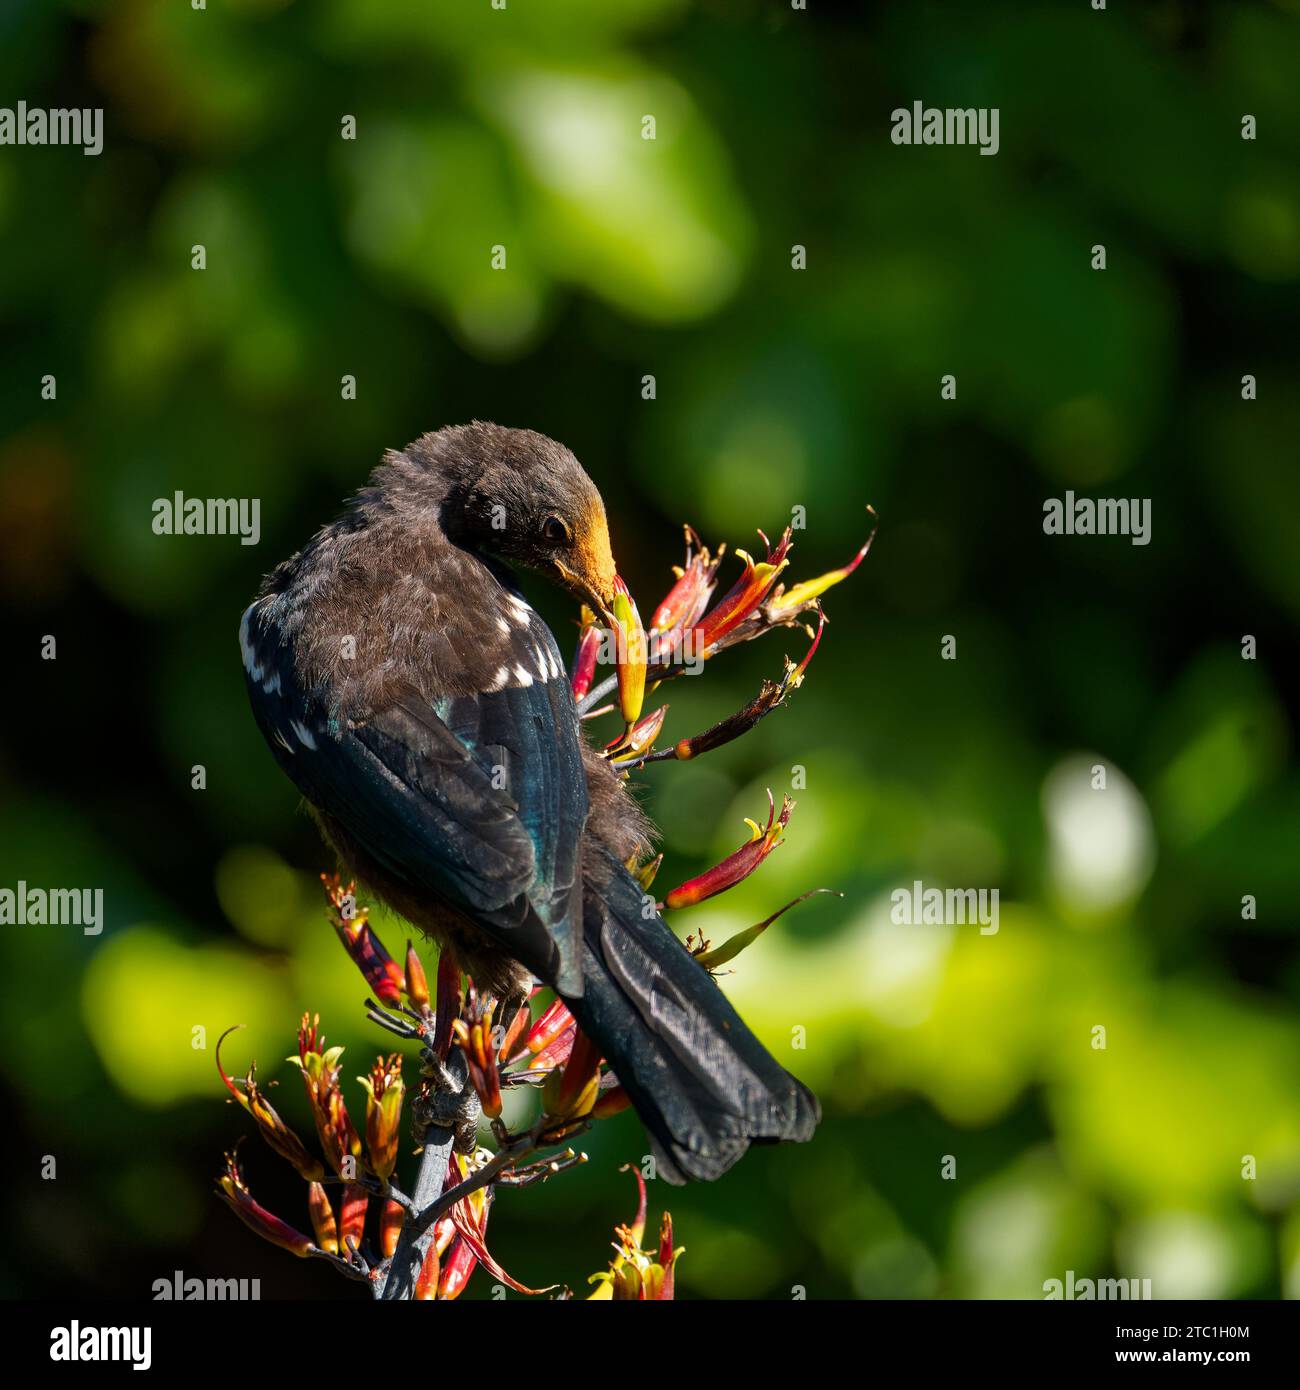 Un piccolo Tui (gape gialla), un uccello passerino endemico della nuova Zelanda, che si nutre di nettare di piante di lino. Il fiore fiorisce depositando il polline d'arancia sulla testa. Foto Stock